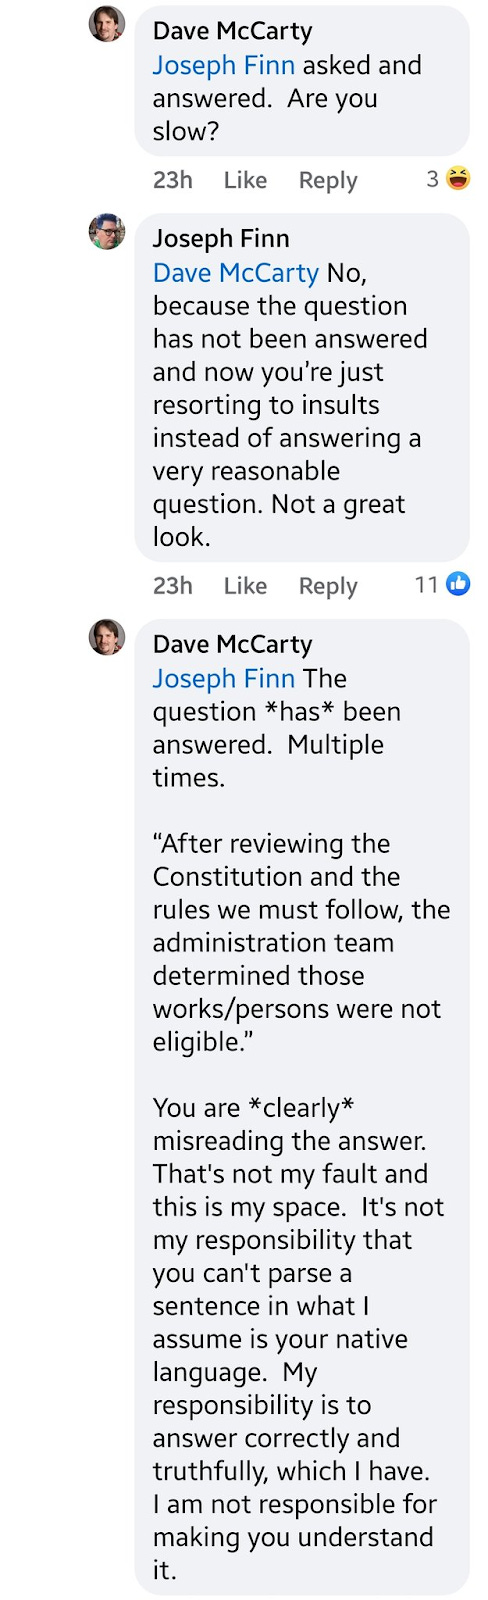 A screenshot showing a Facebook conversation between Dave McCarty and Joseph Finn.